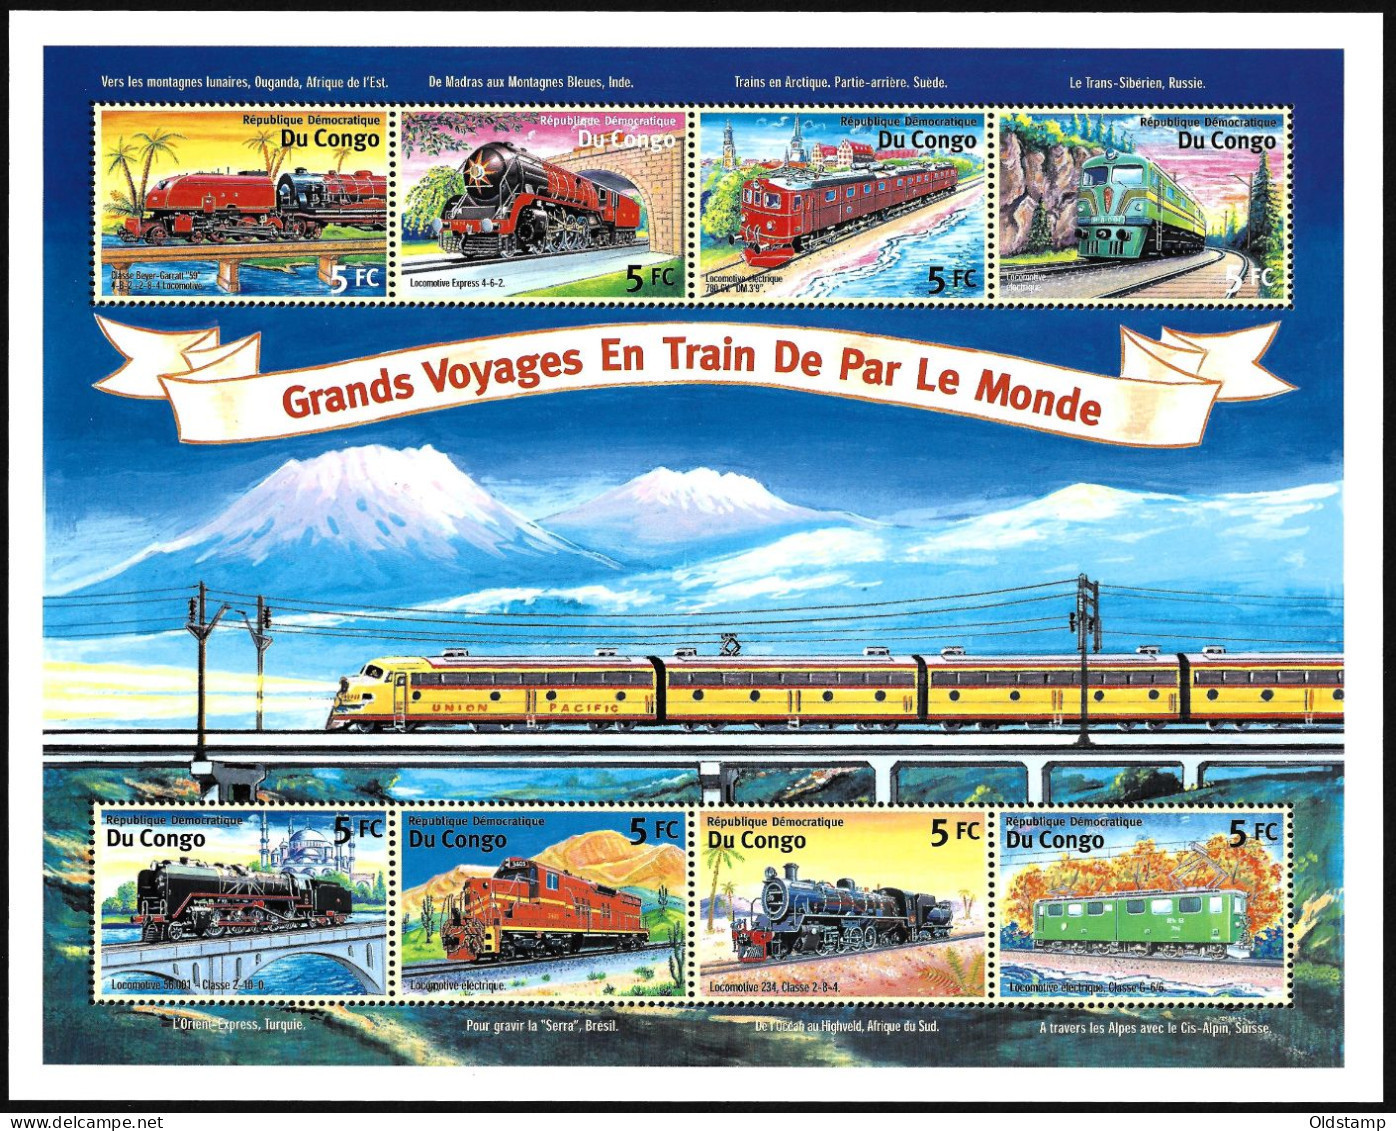 TRAINS Congo 2001 Railroad Steam Locomotive Railways Grand Voyages En Train De Par Le Monde Stamps Block - Trains